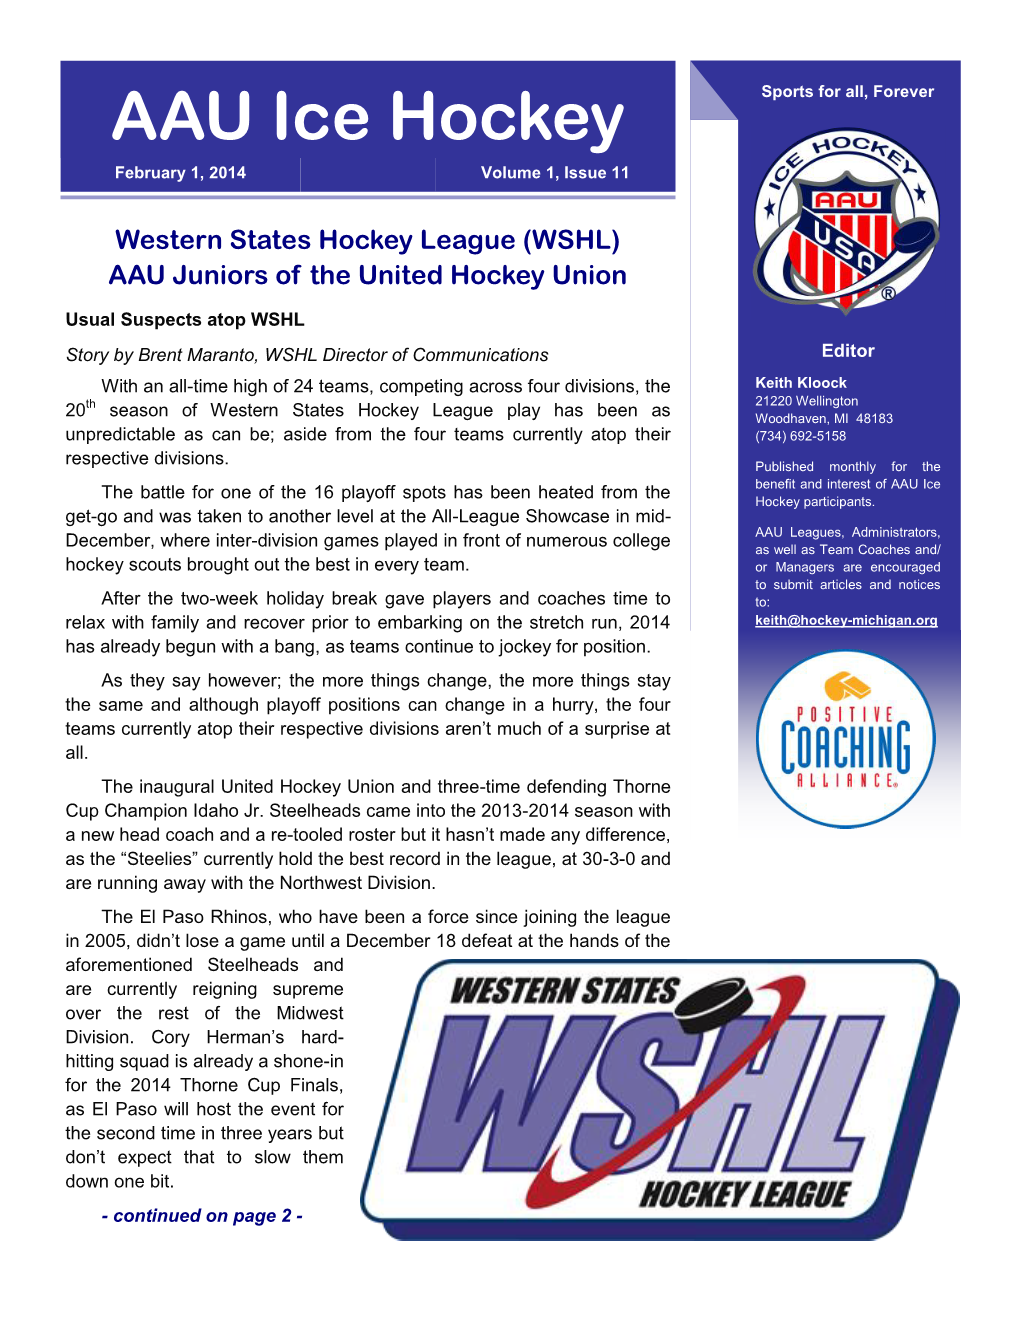 AAU Ice Hockey Newsletter